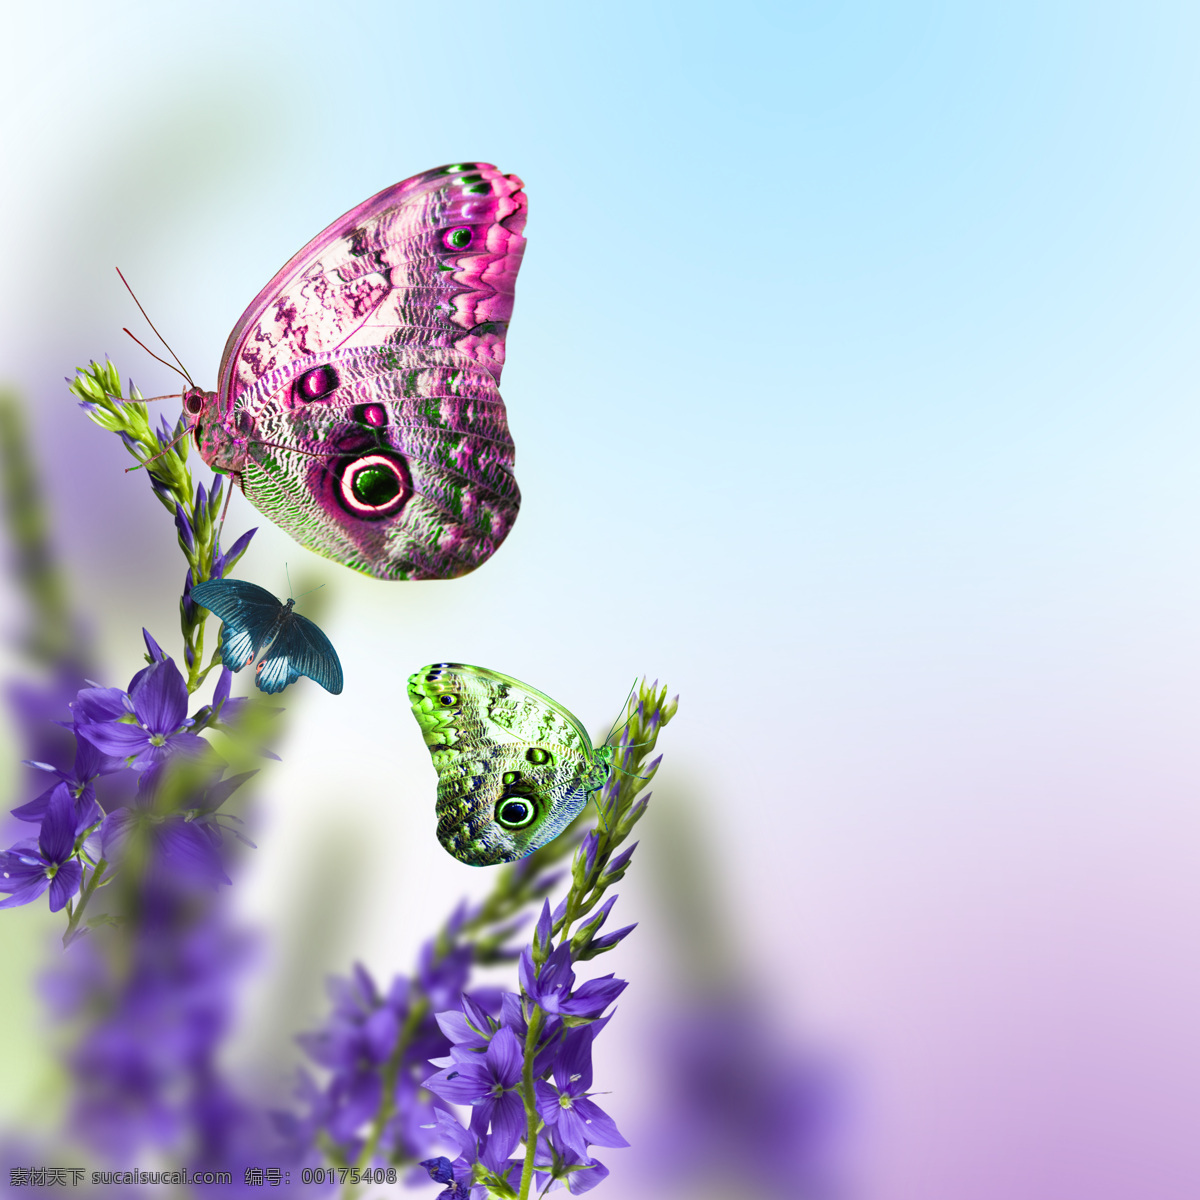 紫色 花朵 彩色 蝴蝶 背景 紫色花朵 浪漫背景 温馨背景 鲜花背景 花卉 美丽鲜花 梦幻背景 花草树木 生物世界